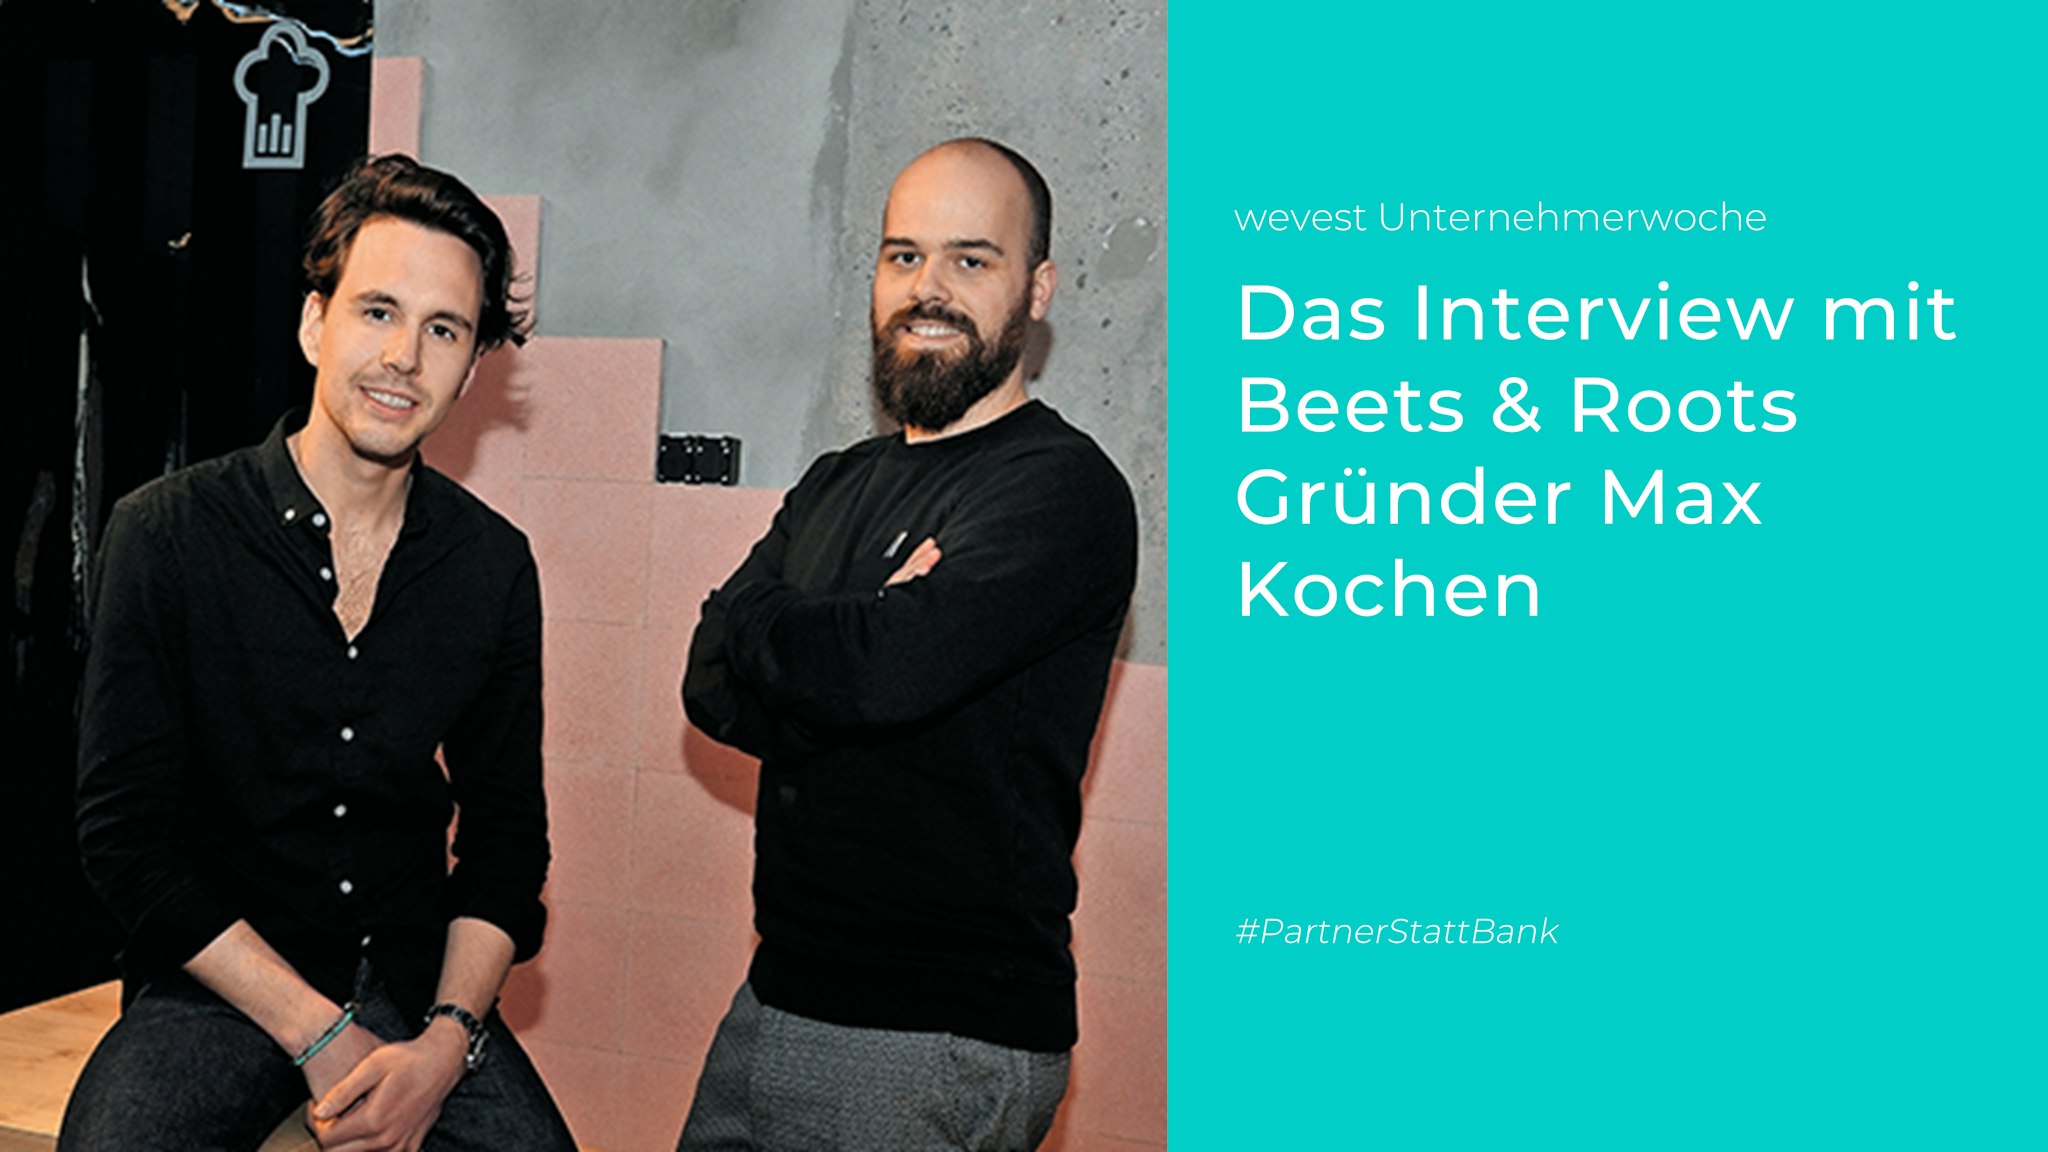 Das Unternehmerinterview mit Max Kochen — Gründer von Beets & Roots.